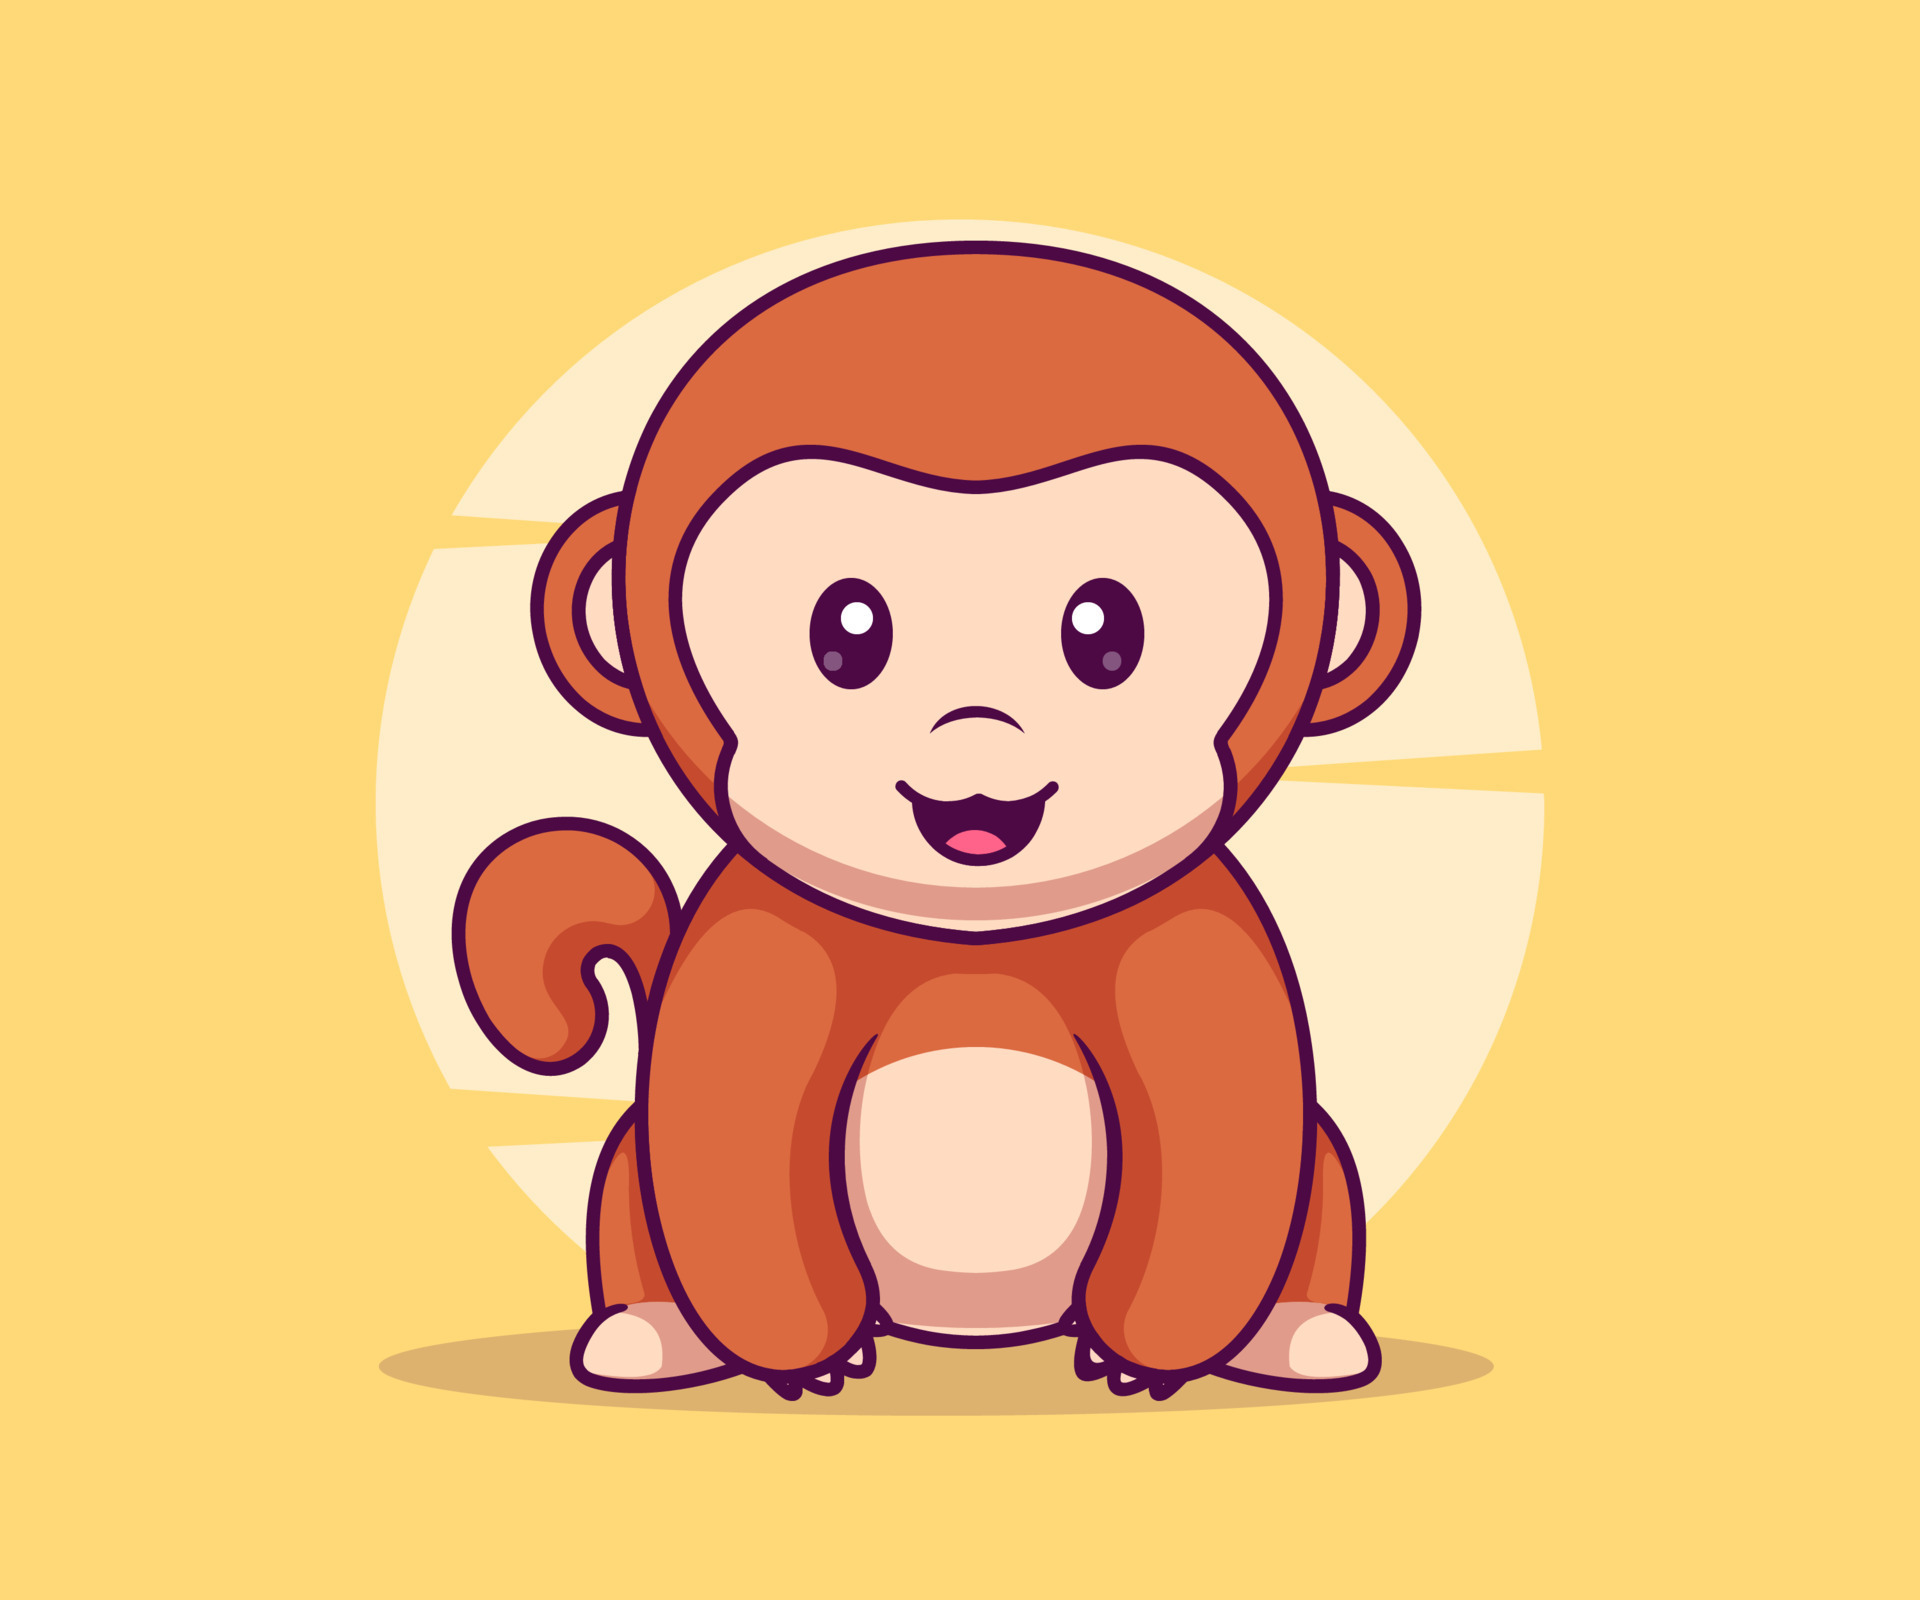 macaco bonito sentado ilustração de ícone de vetor dos desenhos animados.  12813802 Vetor no Vecteezy